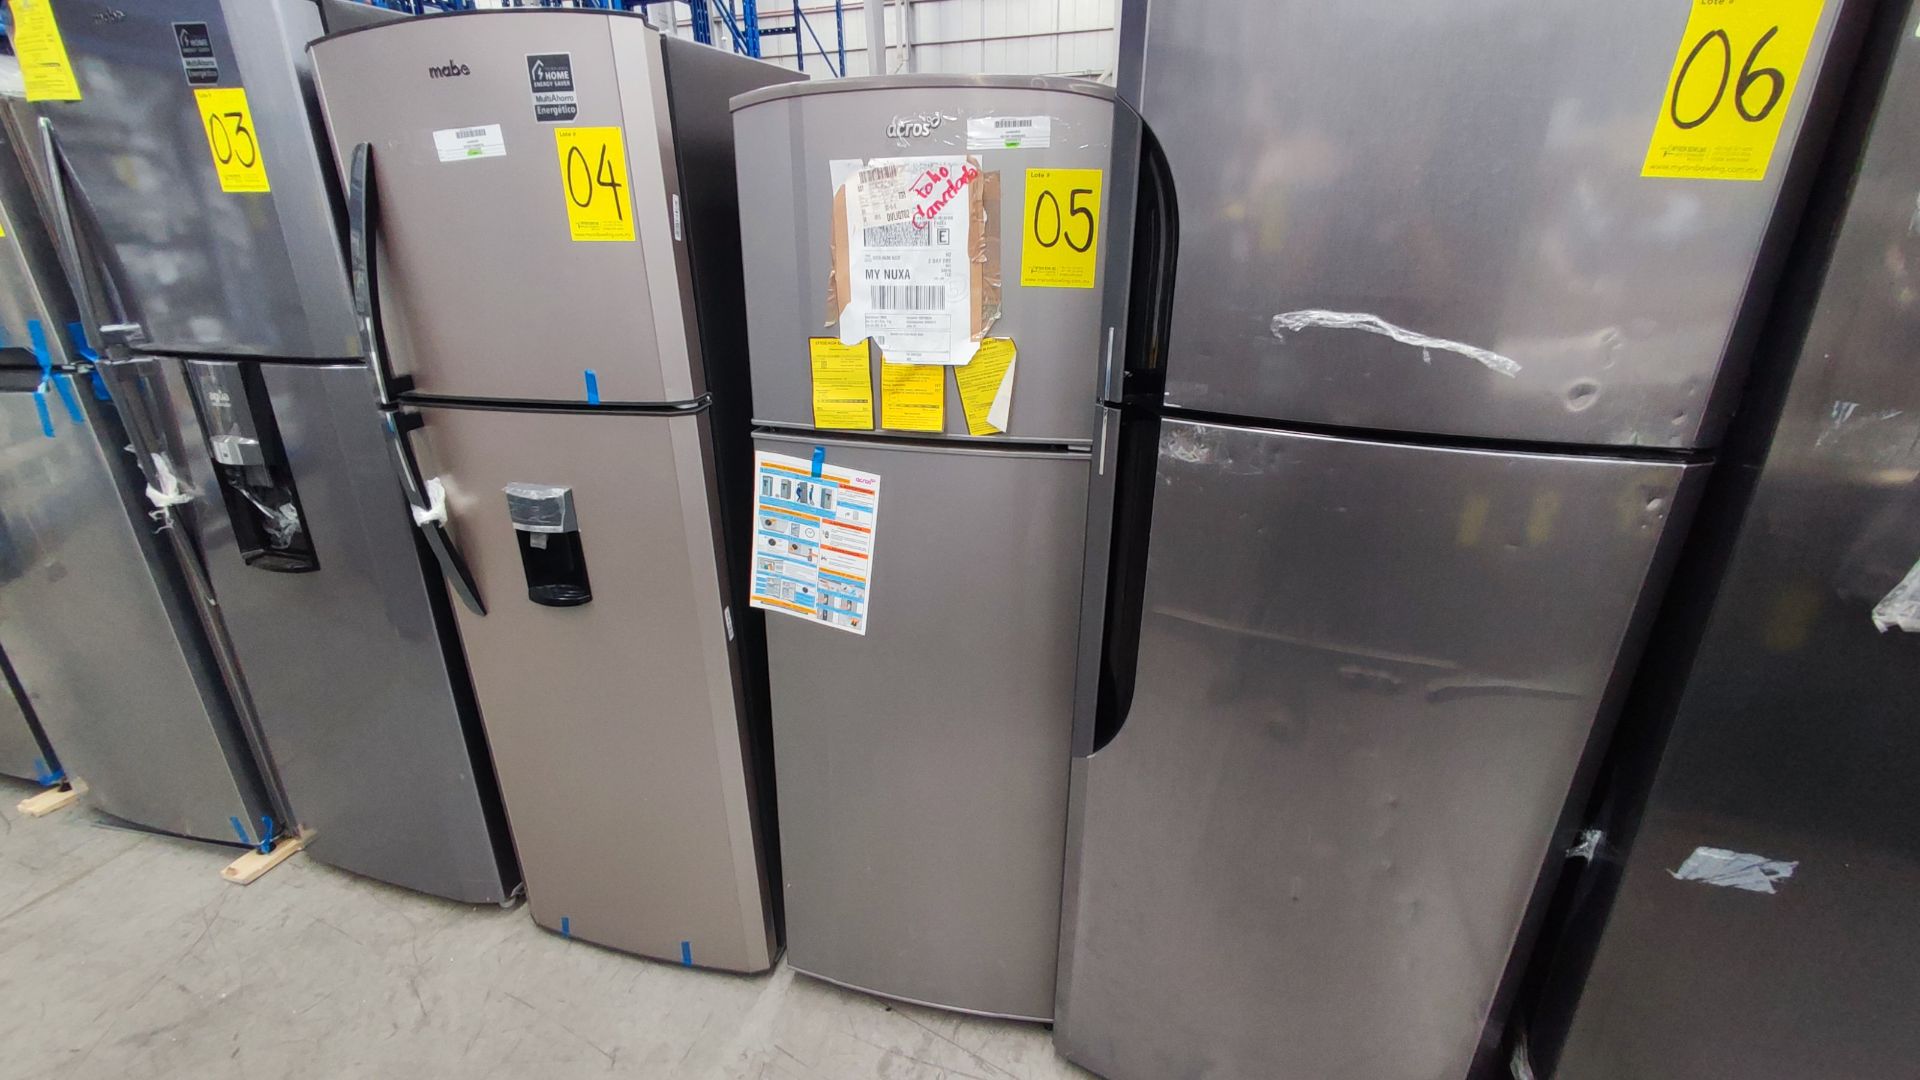 1 Refrigerador Marca Whirlpool, Modelo AT9007G03, Serie 1333816, Color Gris Detalles Estéticos. Fav - Image 2 of 12